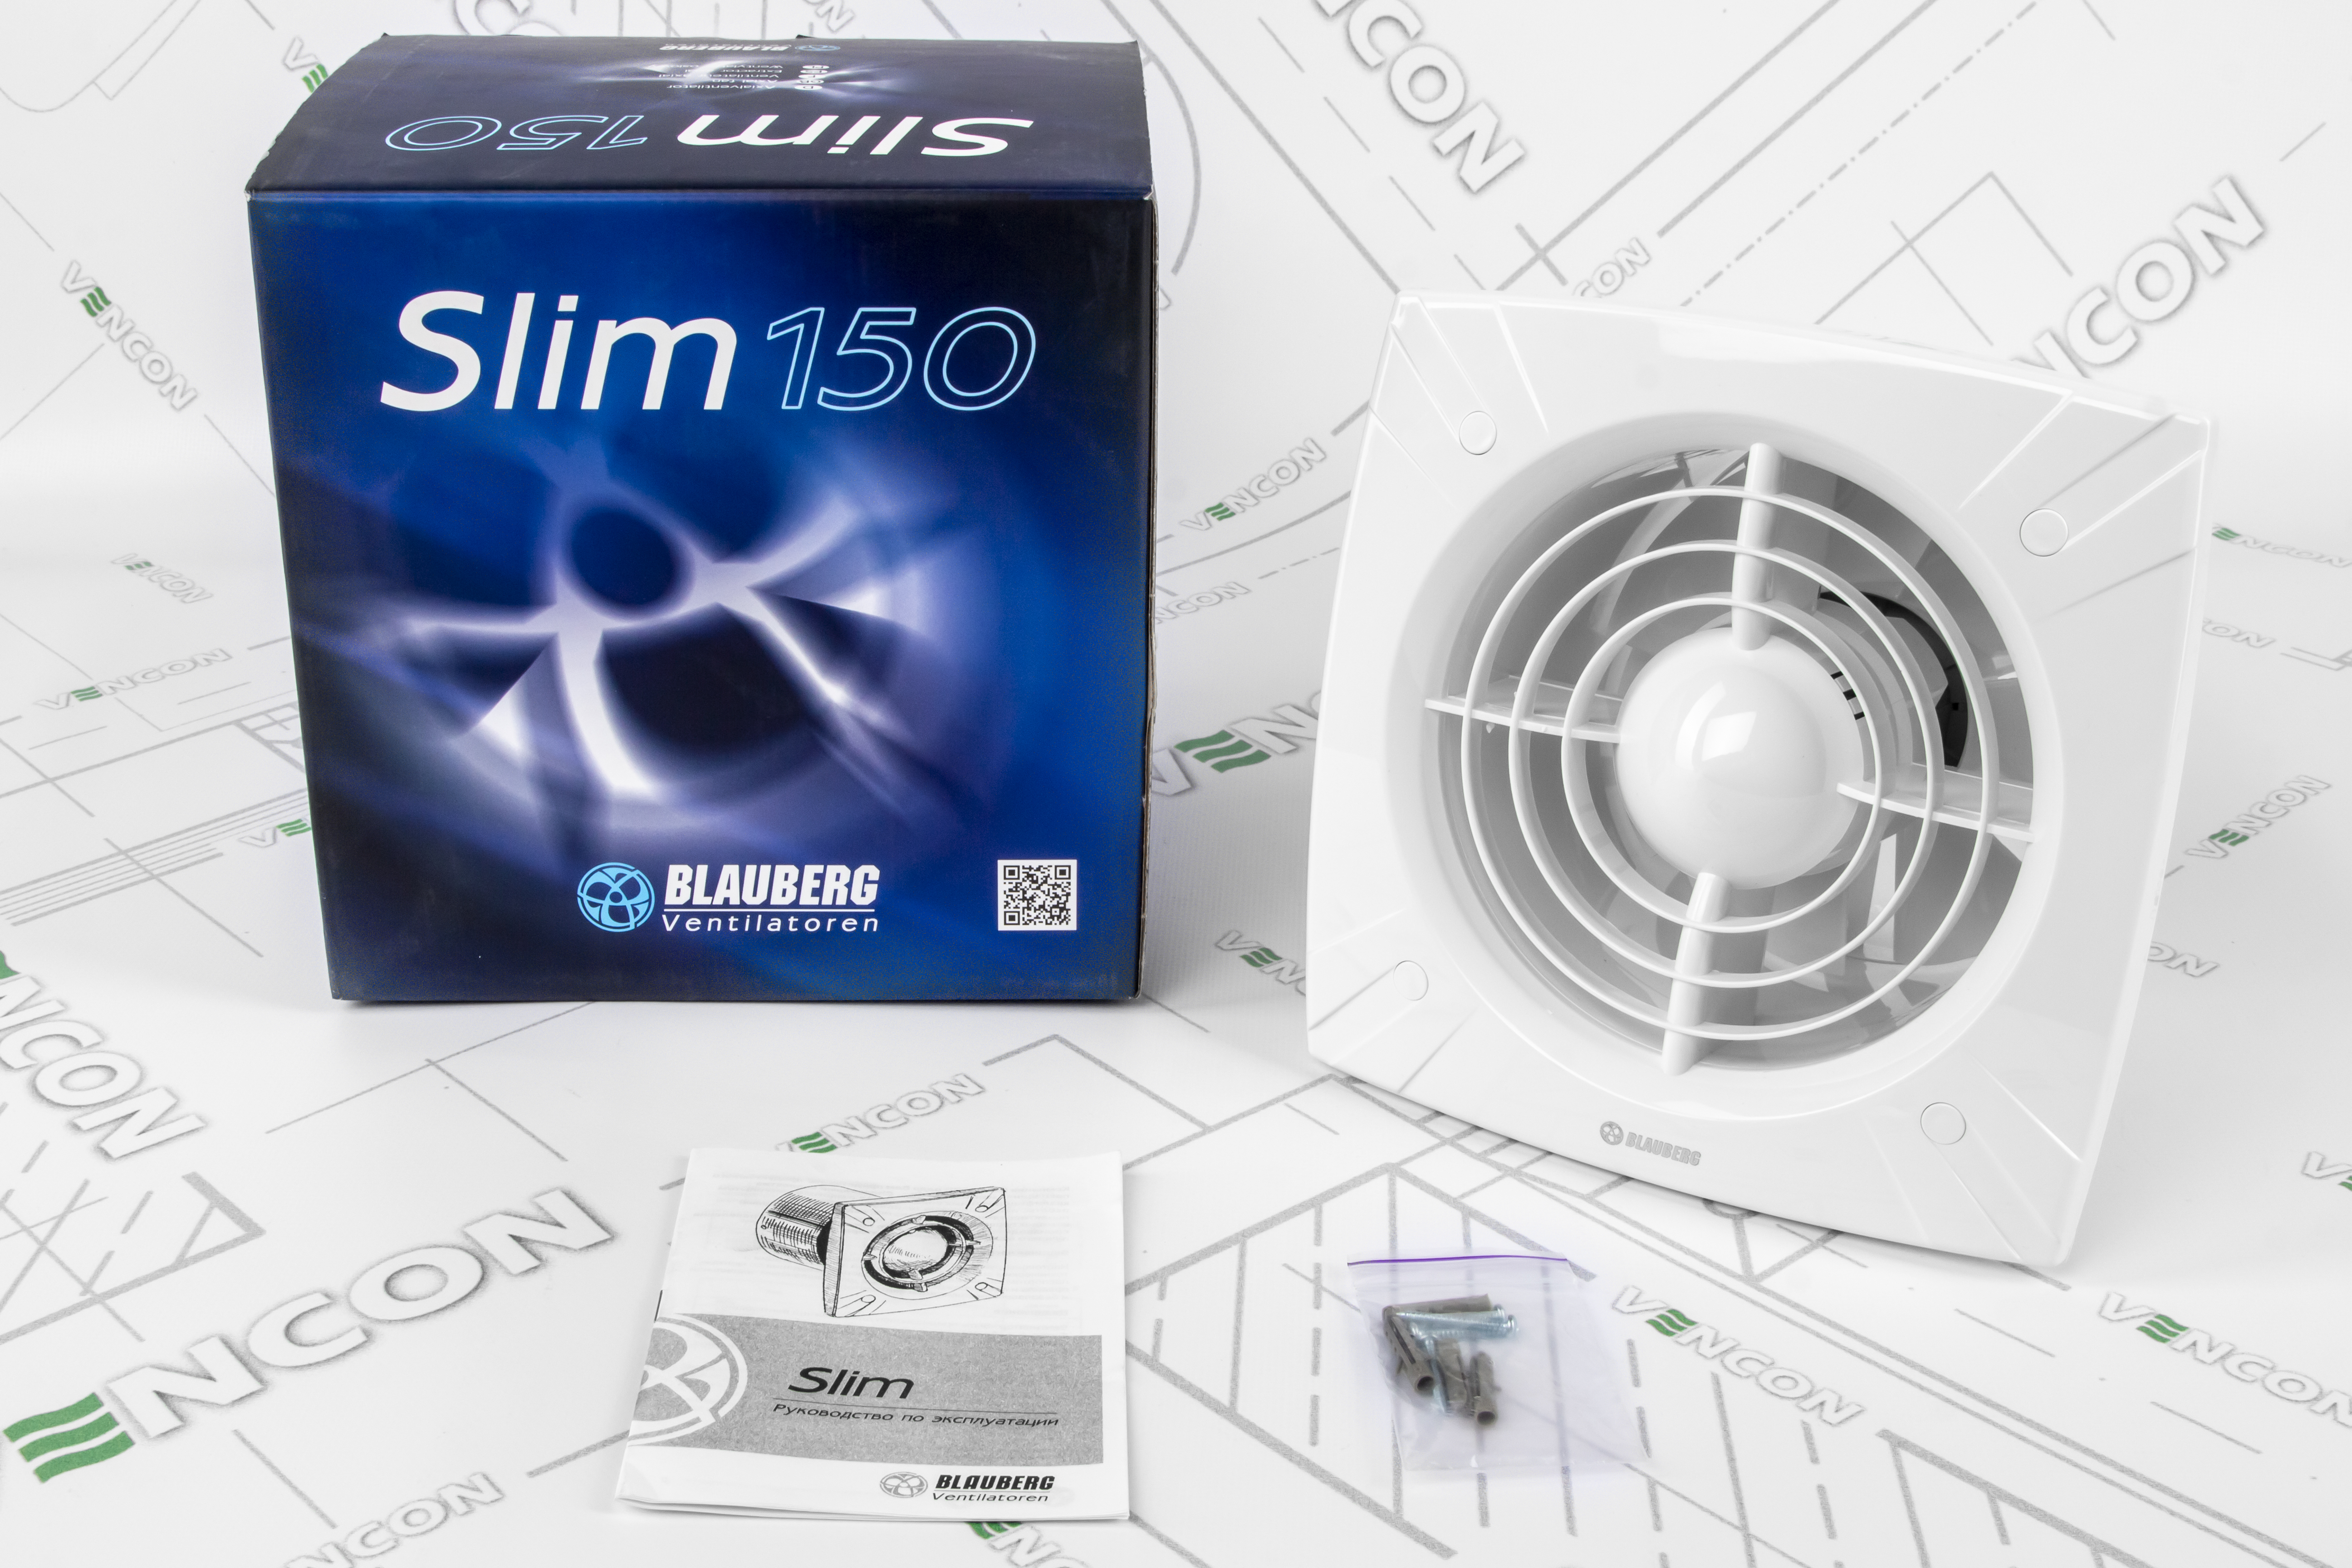 Вытяжной вентилятор Blauberg Slim 150 характеристики - фотография 7